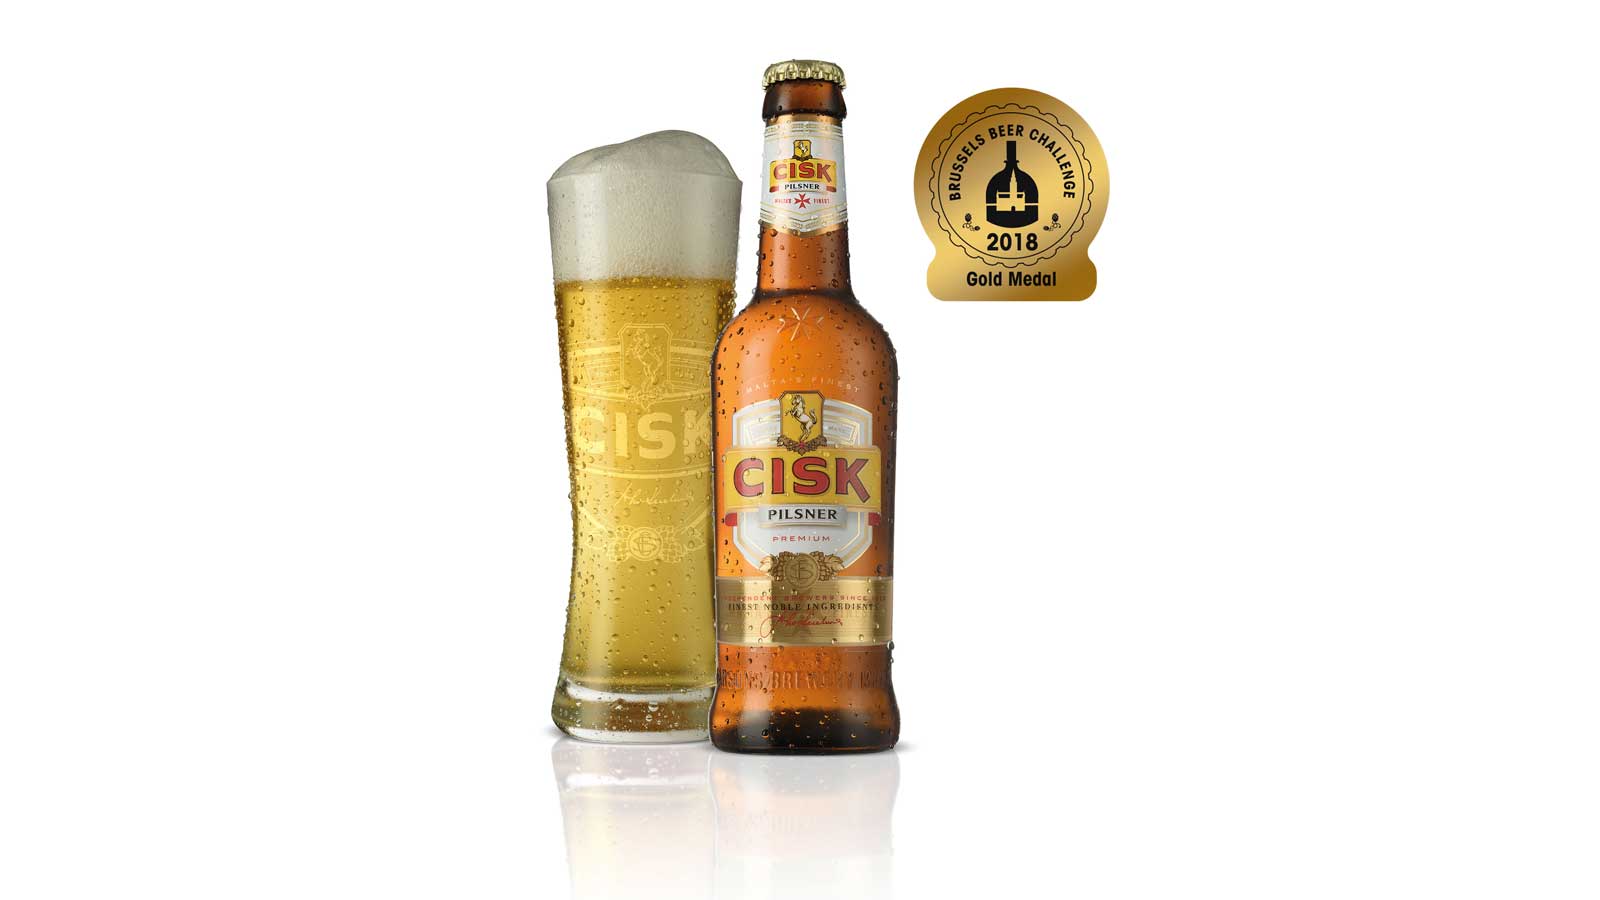 Cisk Pilsner awarded gold at Brussels Beer Challenge 2018 